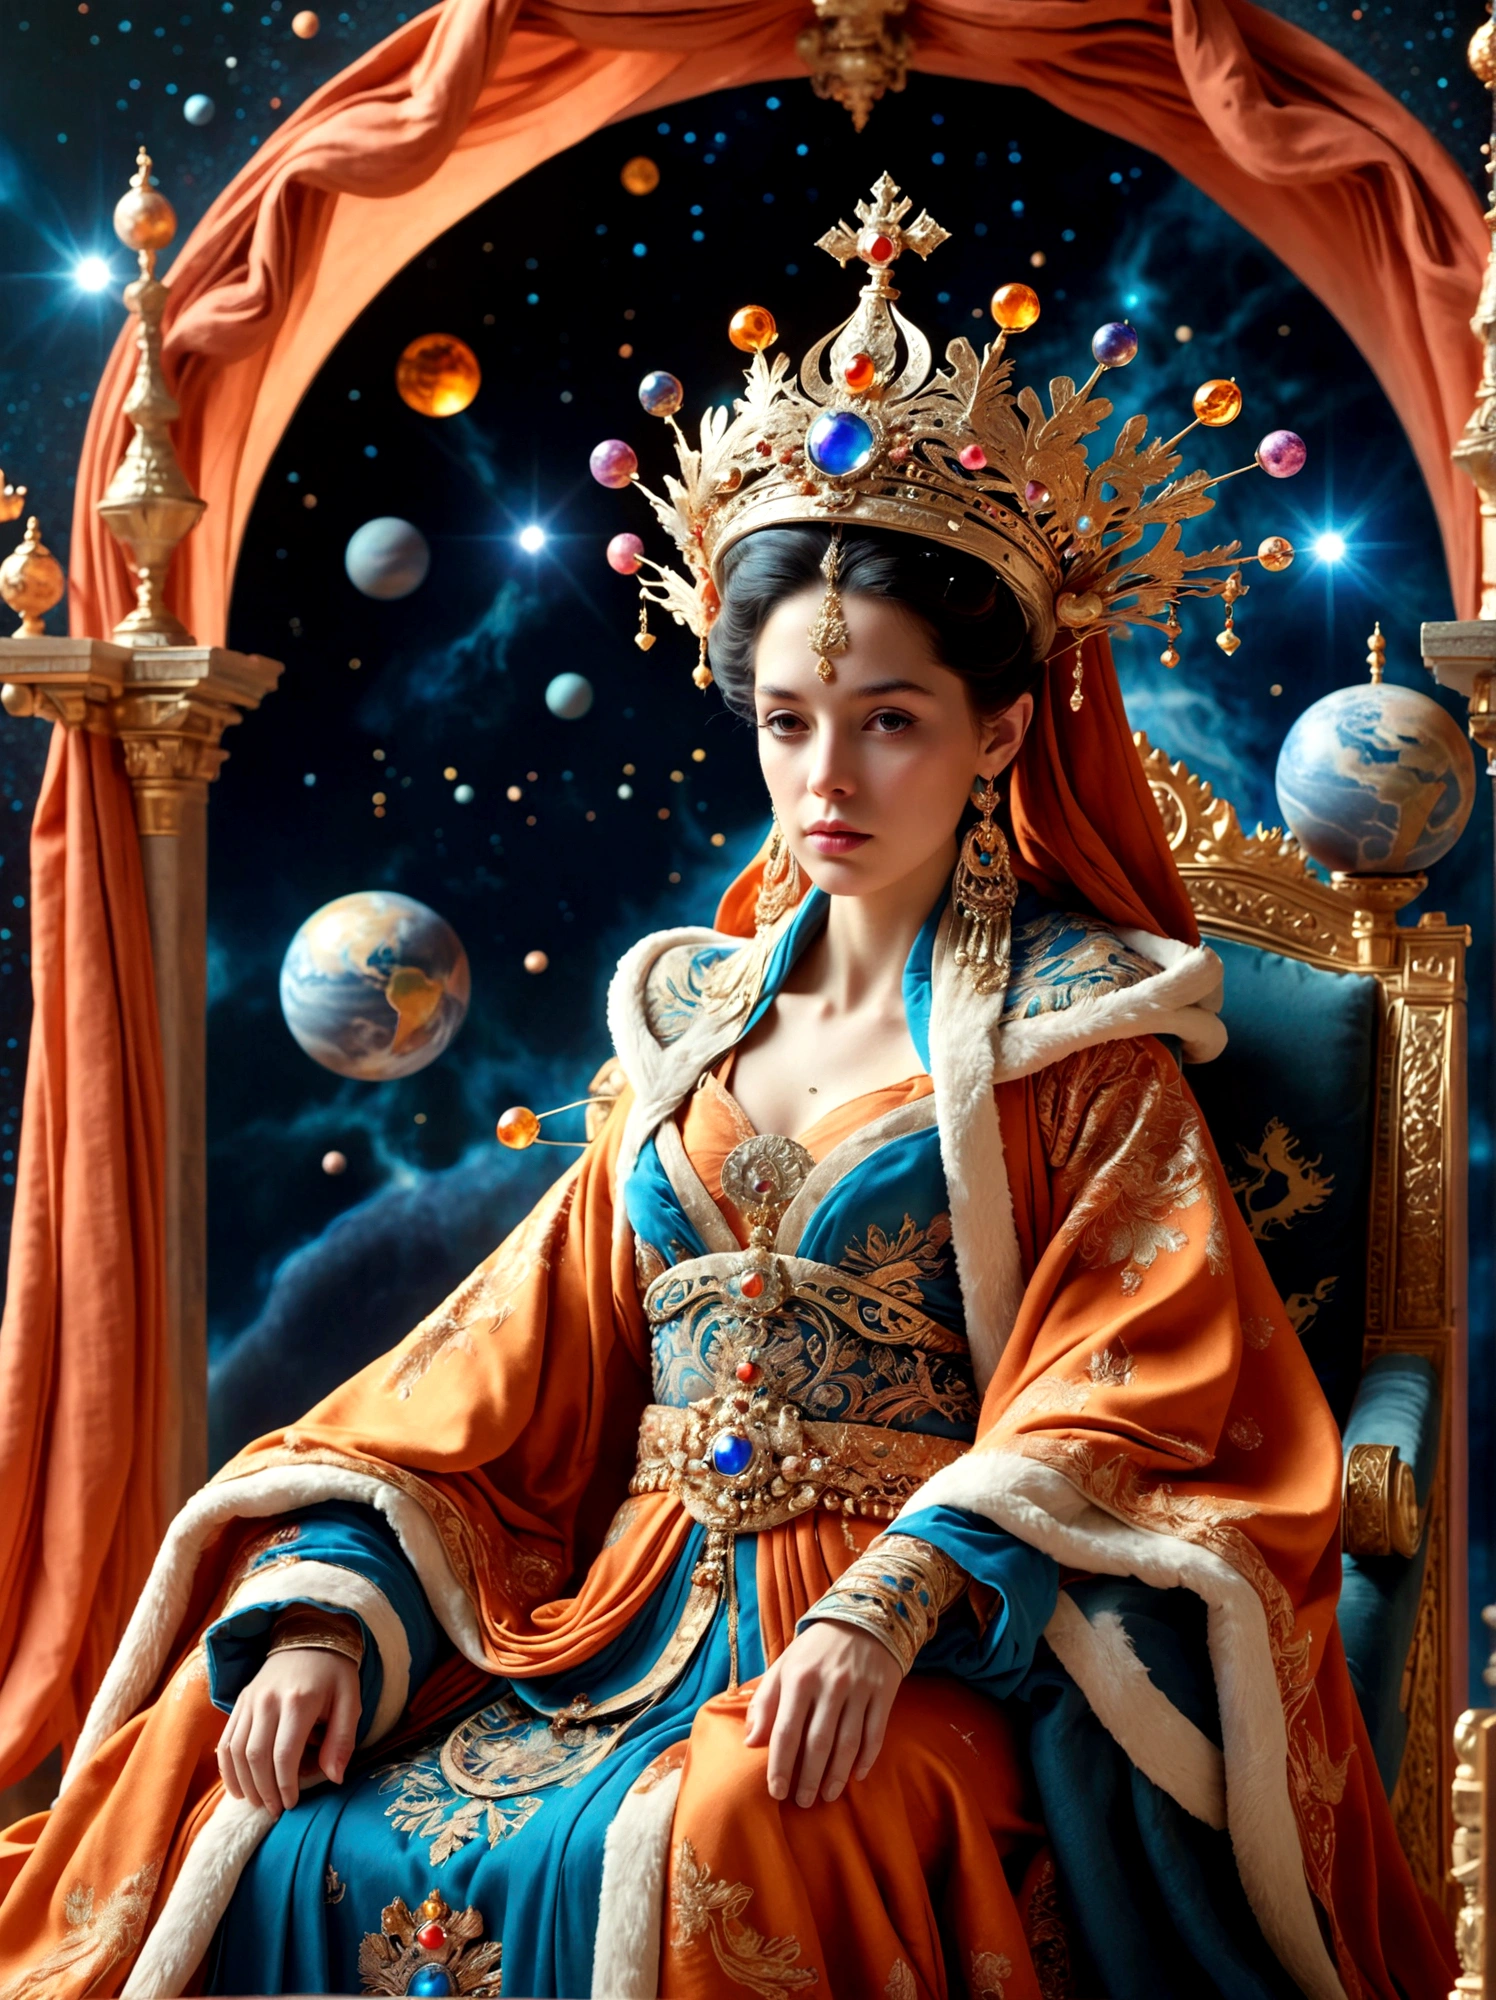 (Reine dans la mythologie:1.3)，Une figure royale dans une robe somptueuse, orné d&#39;une grande couronne, est assis sur un trône, Le décor est surnaturel et surréaliste, situé dans la vaste étendue de l&#39;espace, La figurine est perchée sur une planète miniature entièrement enveloppée par le riche tissu de la robe., reflétant un élément d&#39;extravagance royale